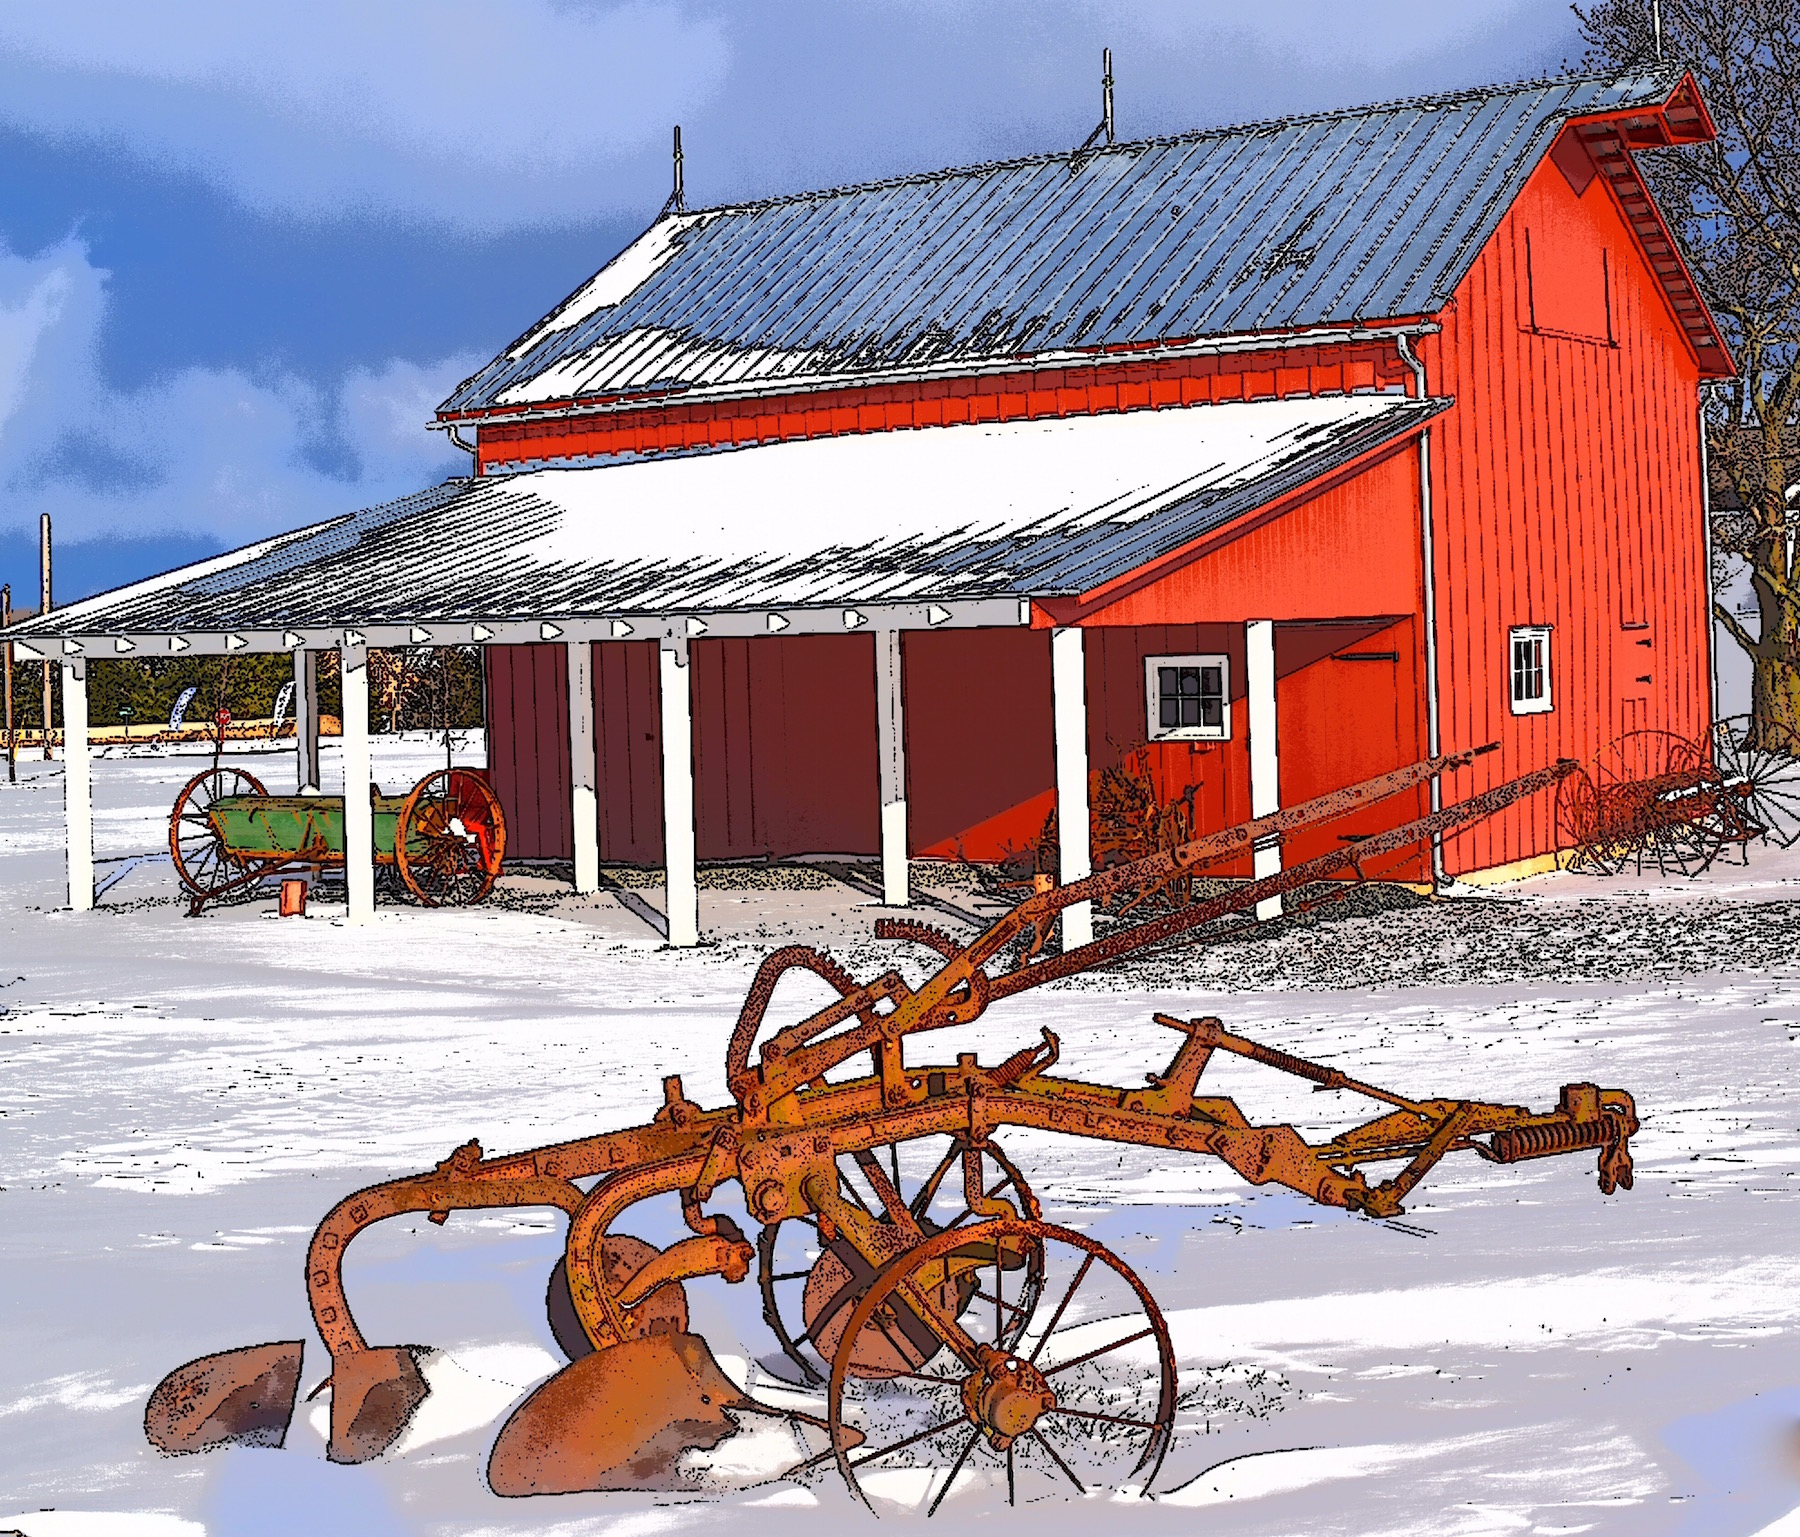 Red Farmhouse in Winter - Steven Samuel Images